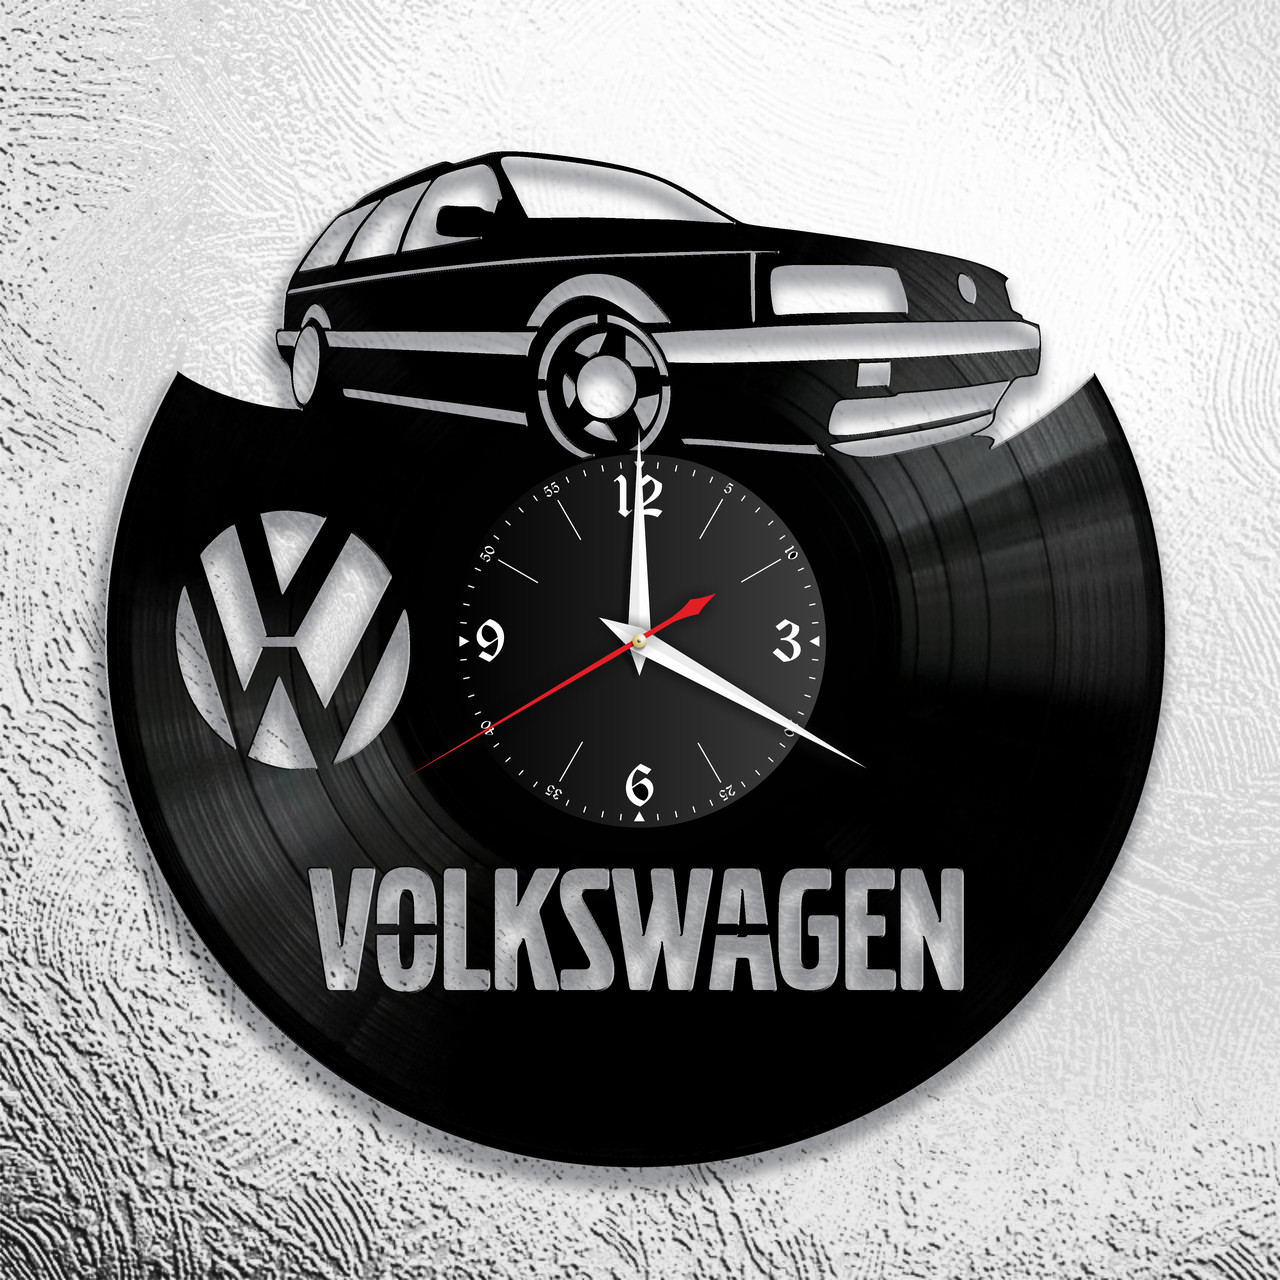 Оригинальные часы из виниловых пластинок  "Volkswagen " версия 2, фото 1